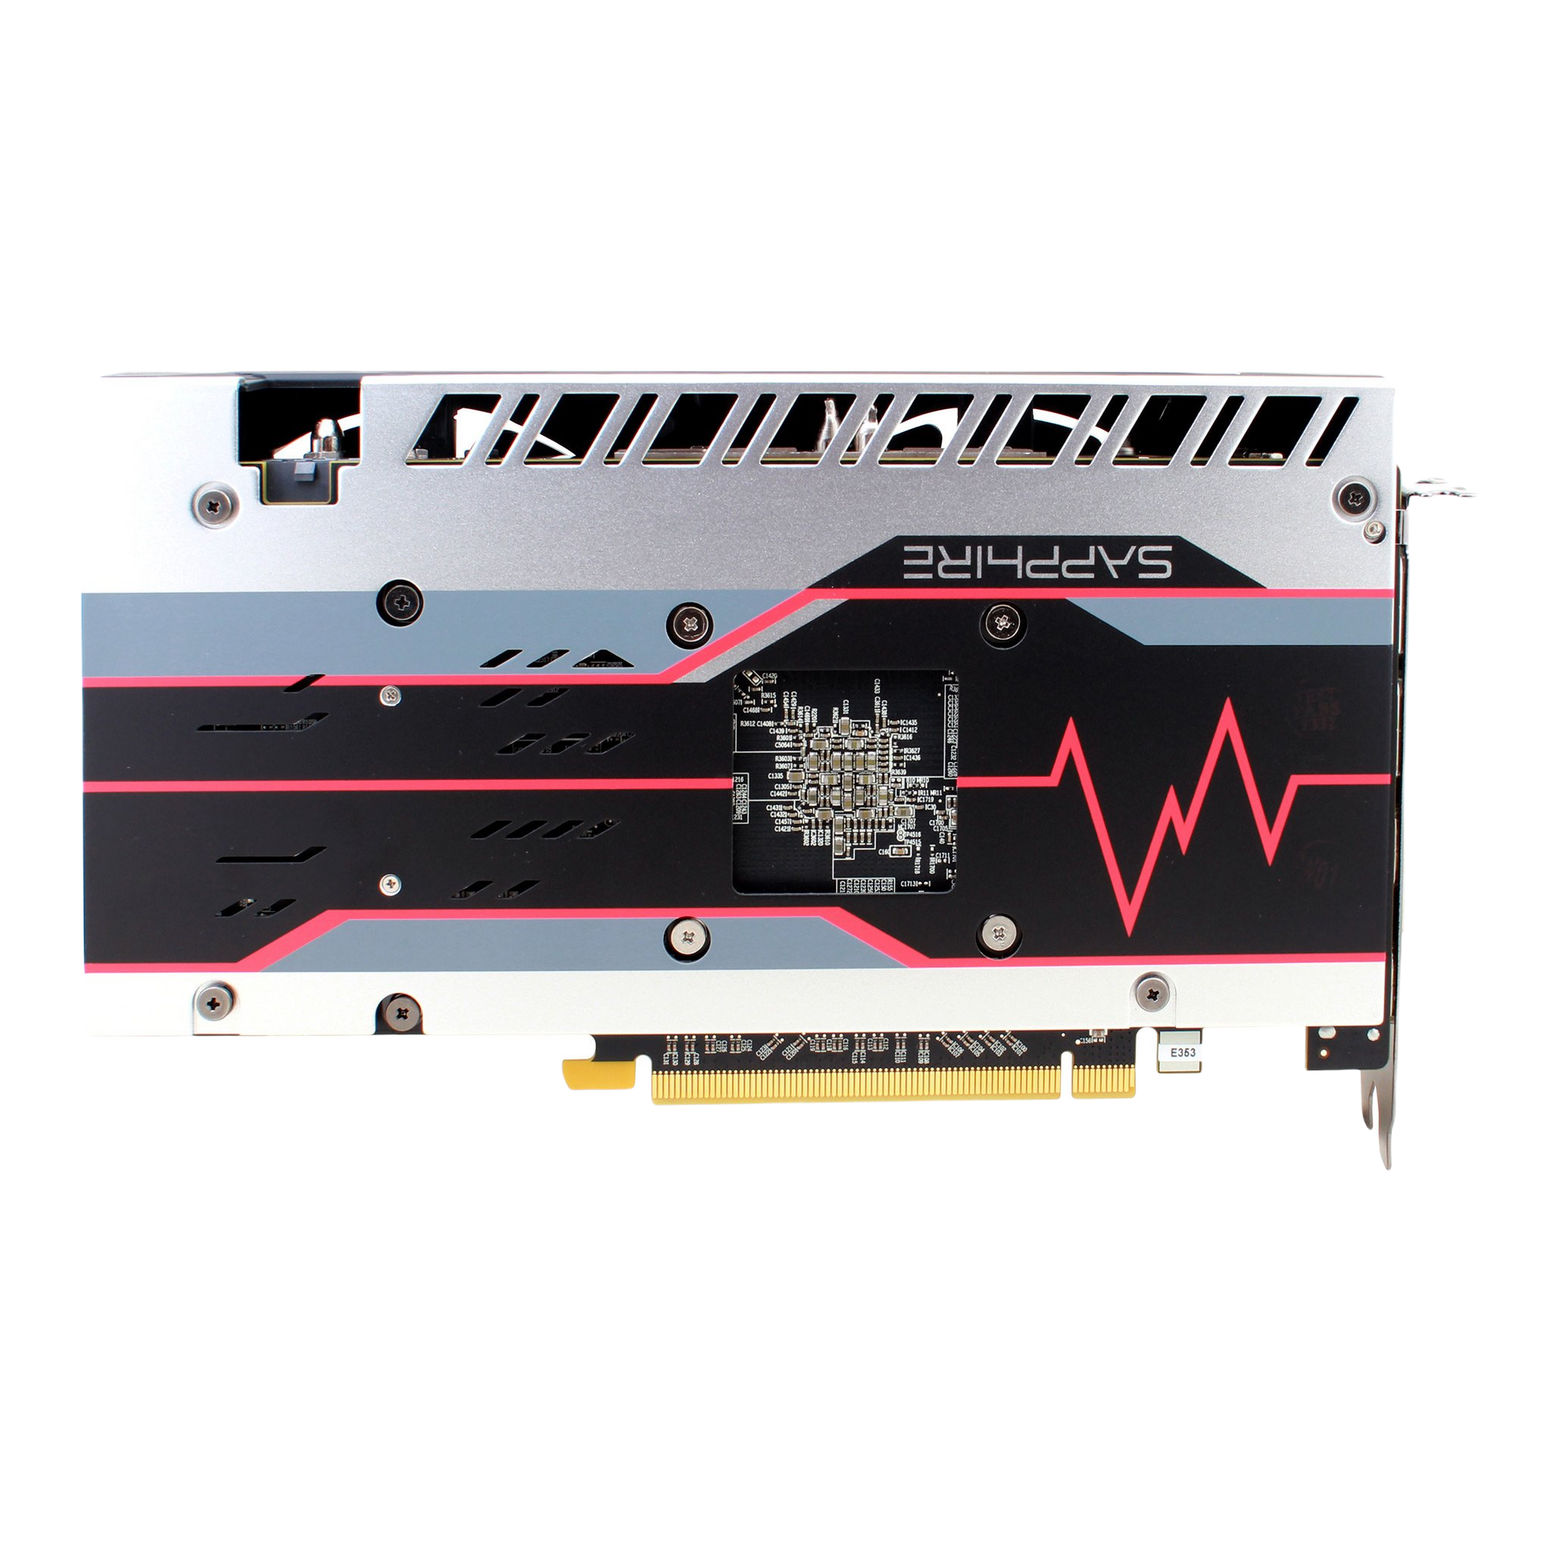 AKiTiO Node Titan Thunderbolt 3 eGPU Enclosure + Radeon RX 580 Graphics Card Bundle - Discontinued